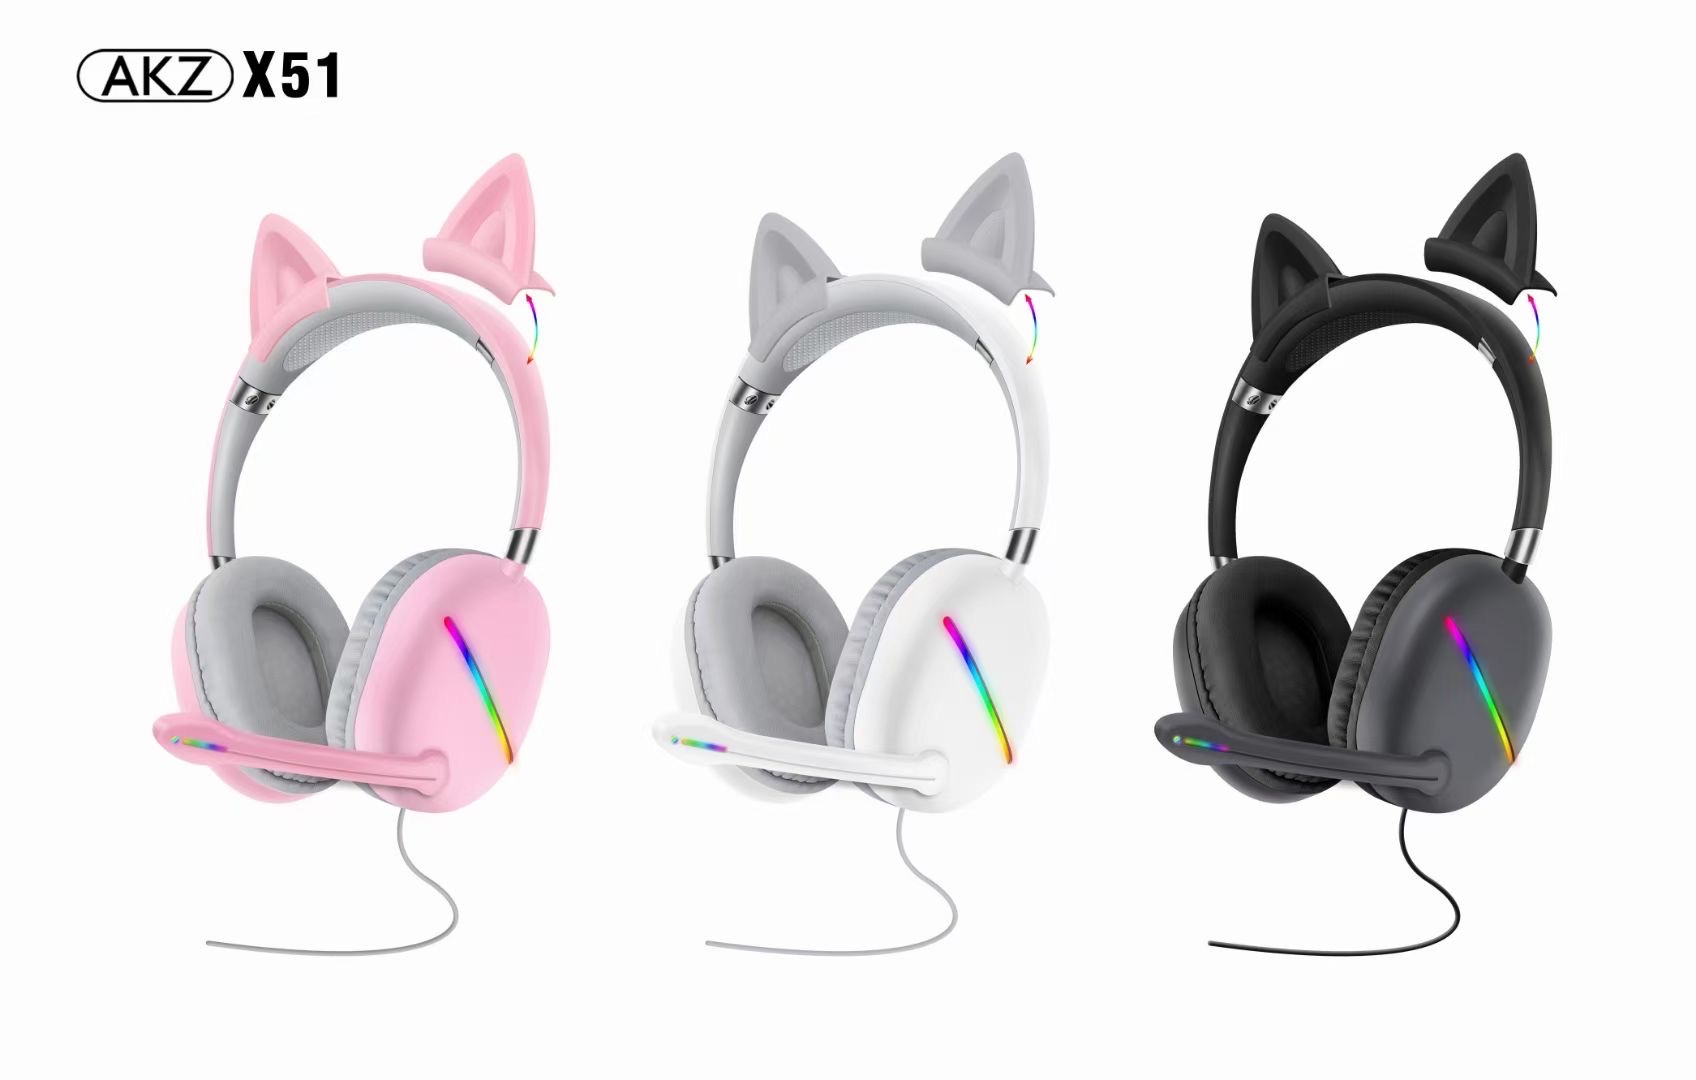 新款AKZ-X51有线游戏耳机猫耳机可拆缷猫耳RGB灯炫彩发光带线耳麦带声卡功能详情图3